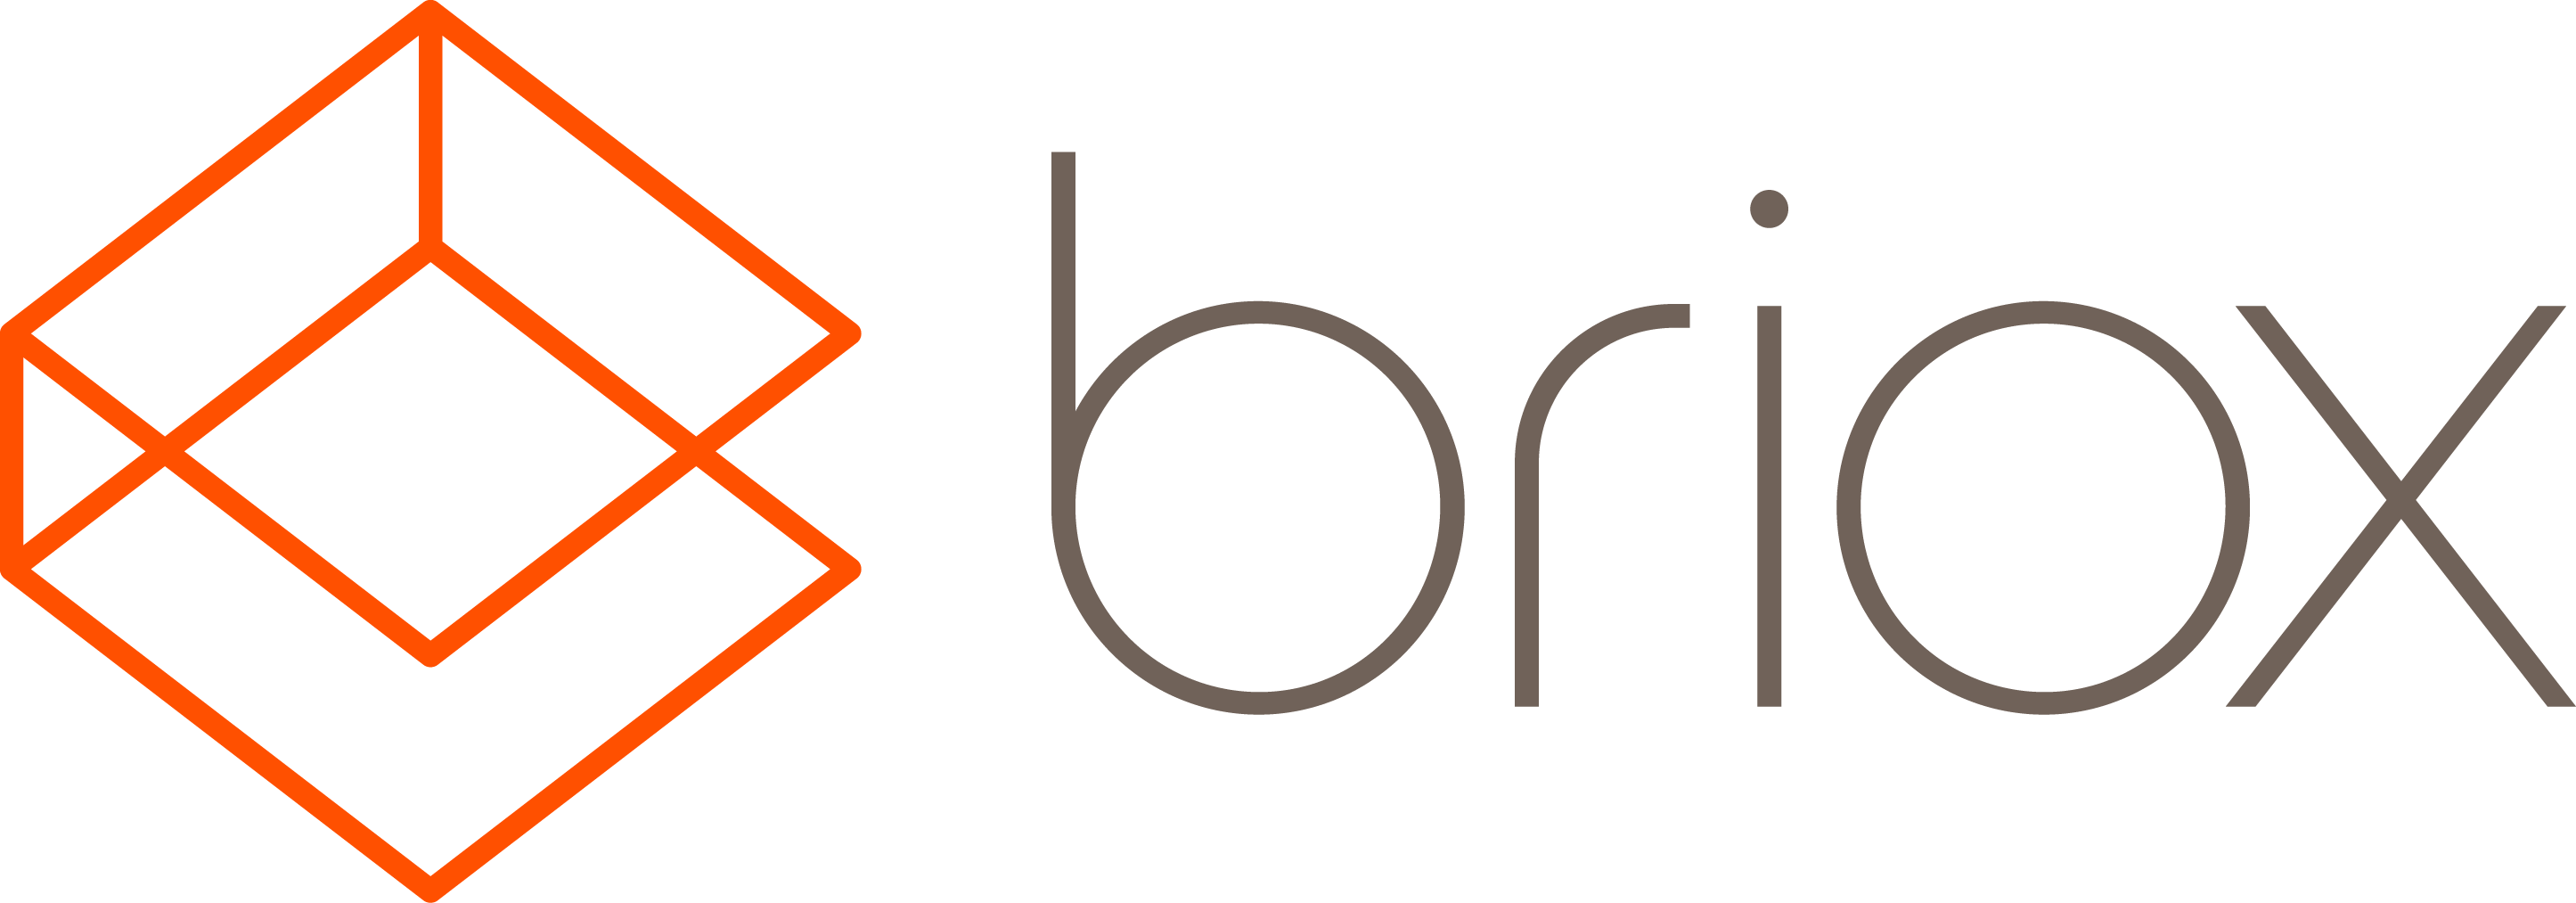 briox logo rgb.png